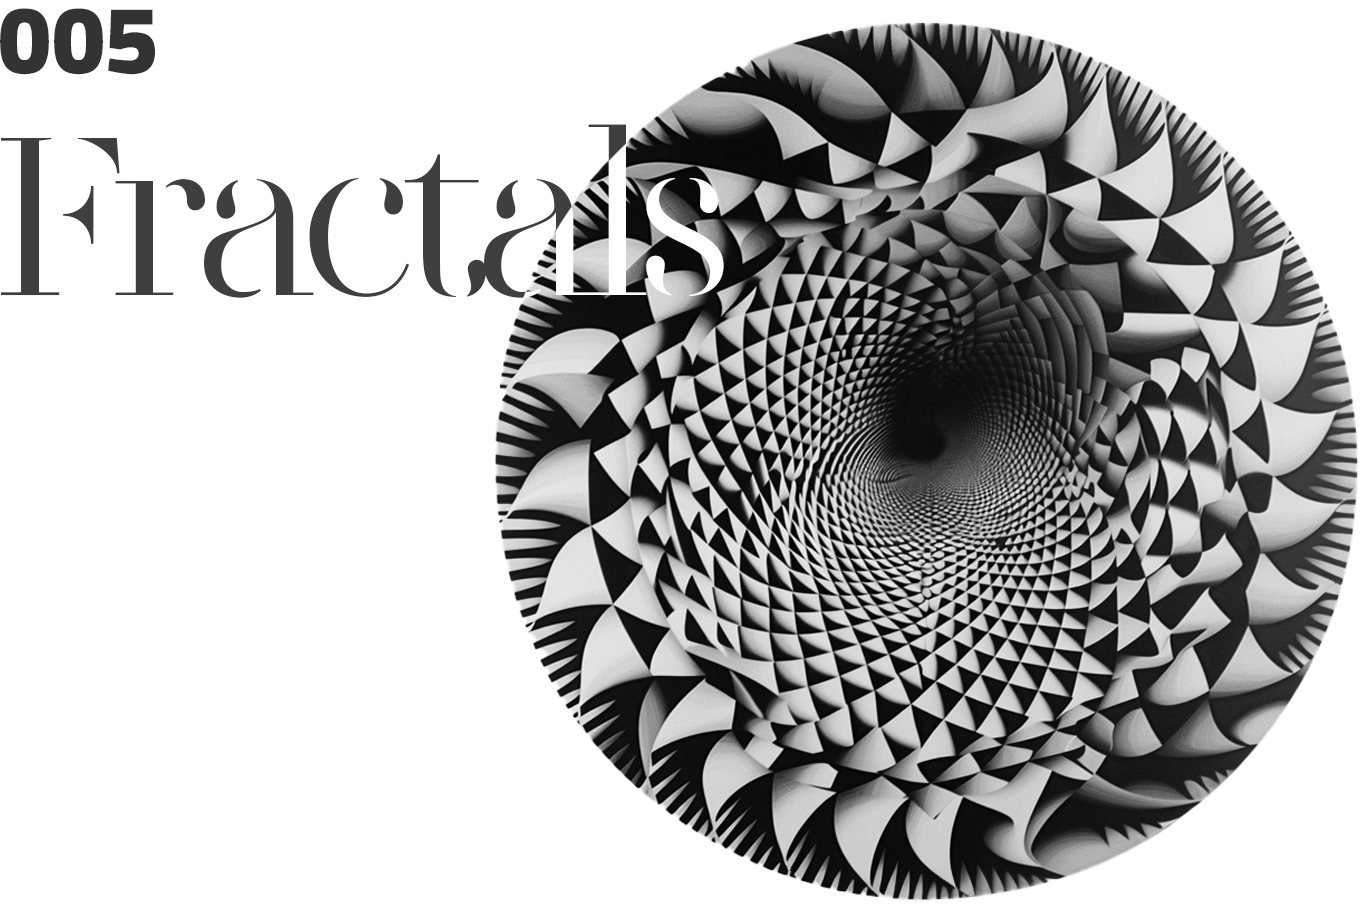 Issue 005: Fractals ft. Can Büyükberber